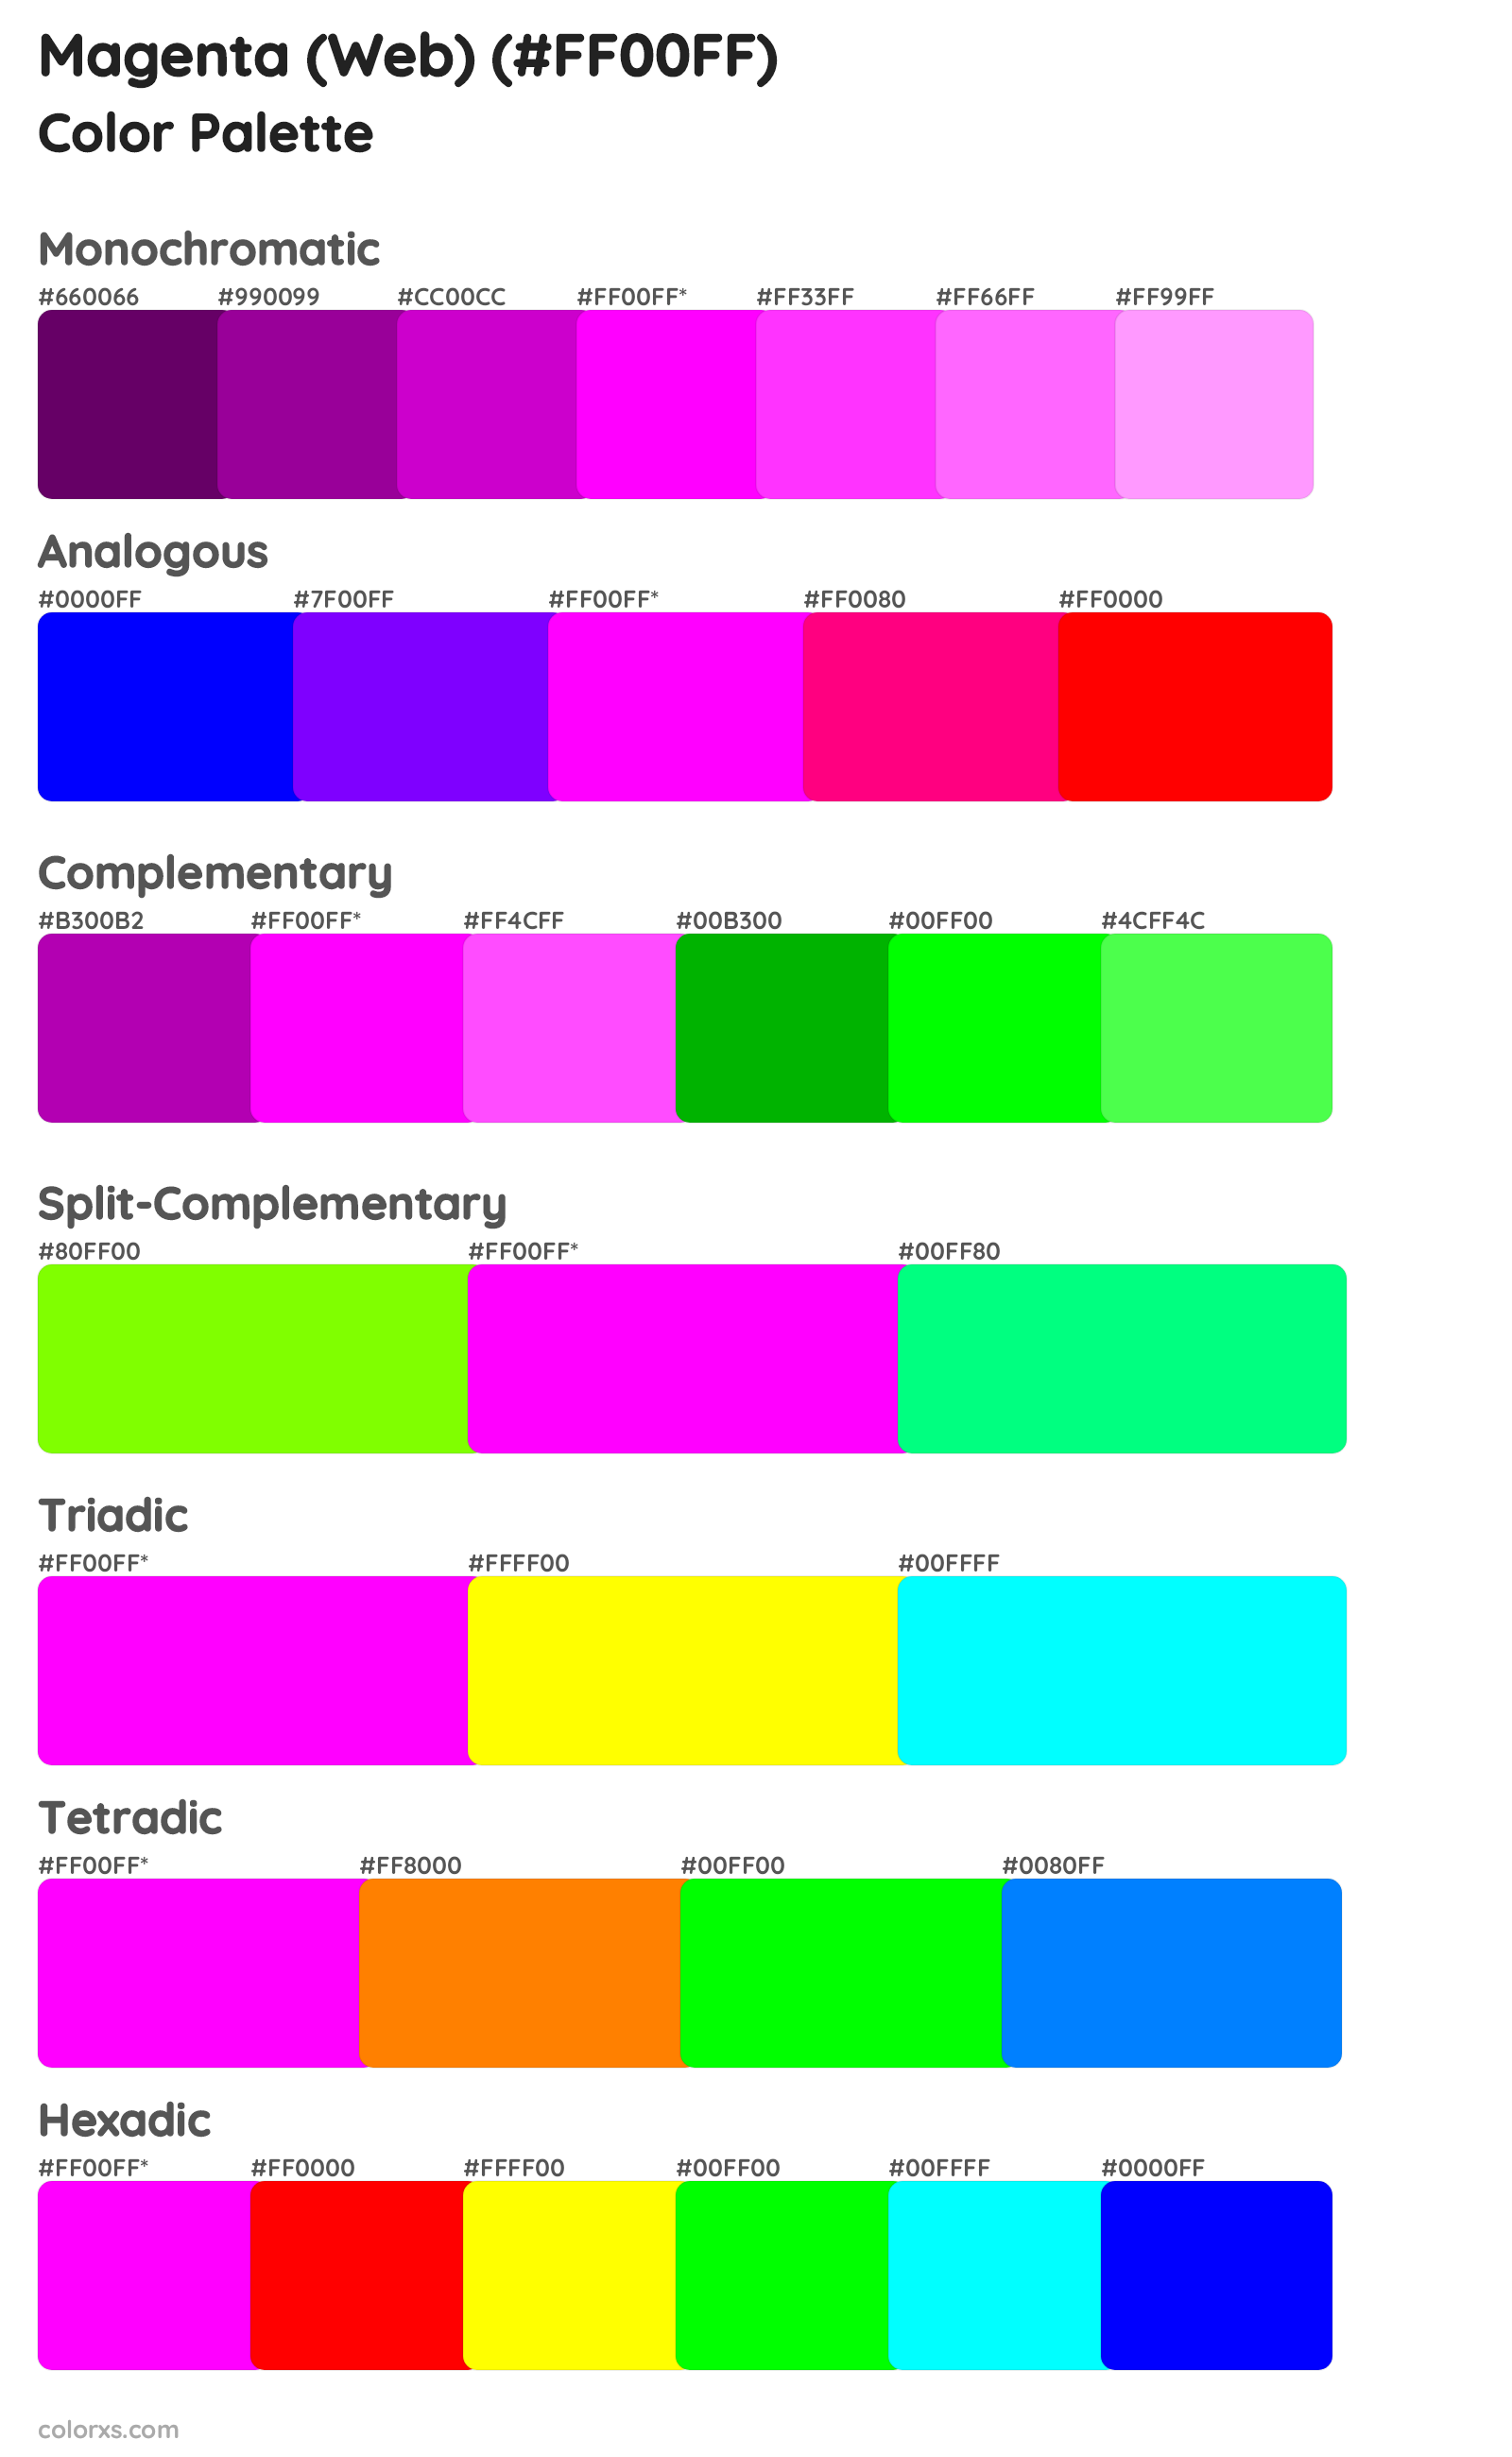 Magenta (Web) Color Scheme Palettes